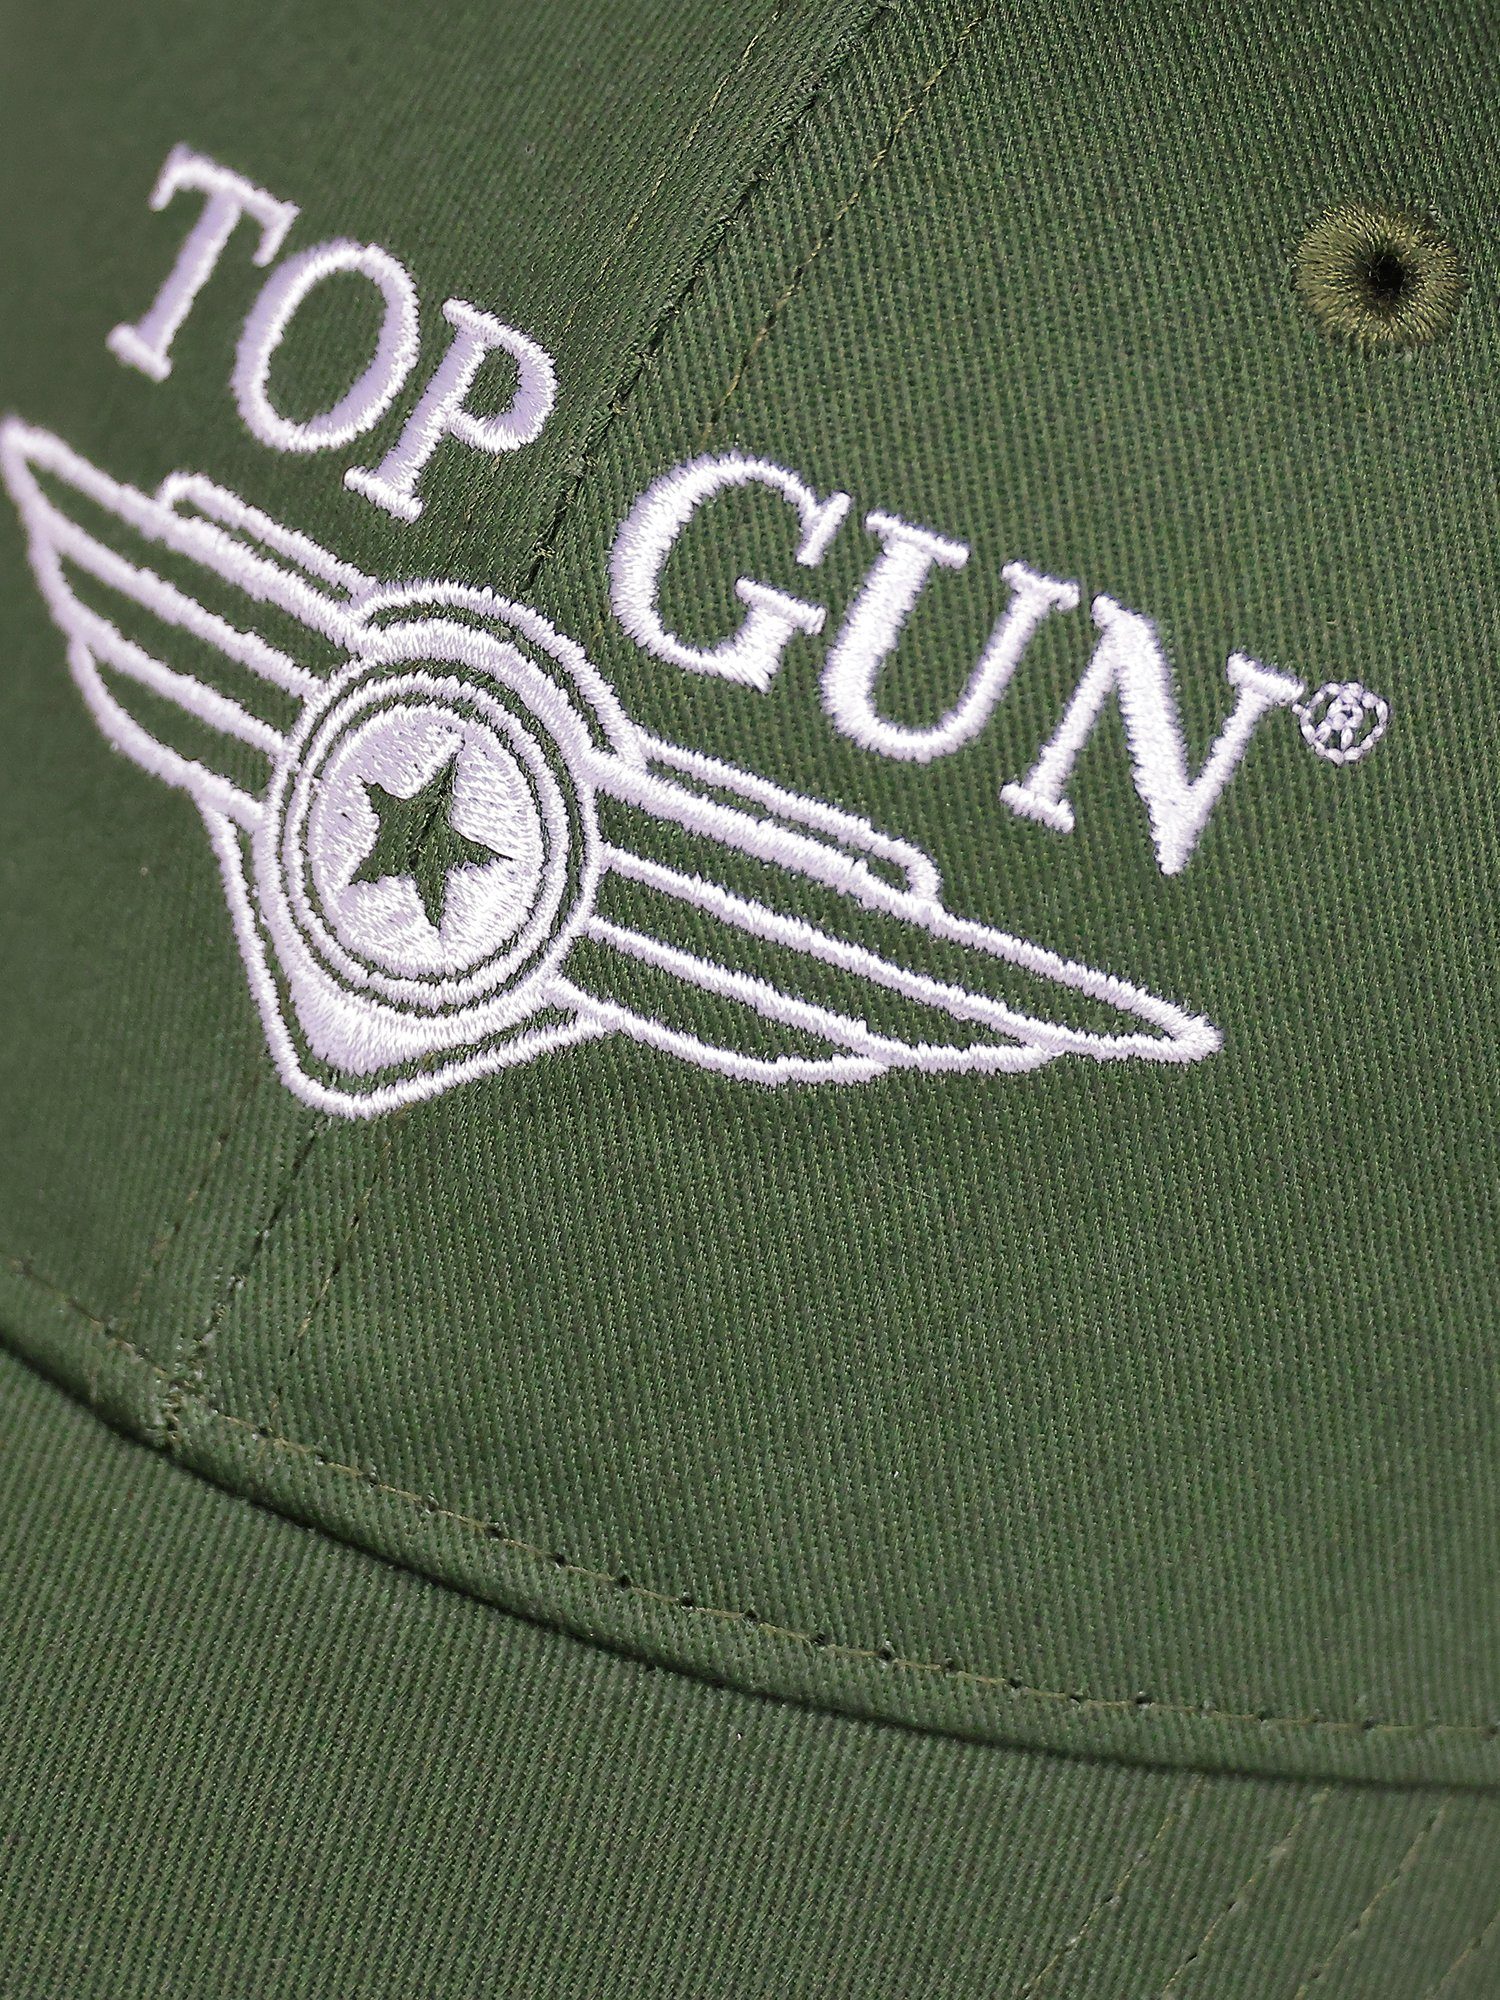 TOP GUN TG22013 olive Snapback Cap